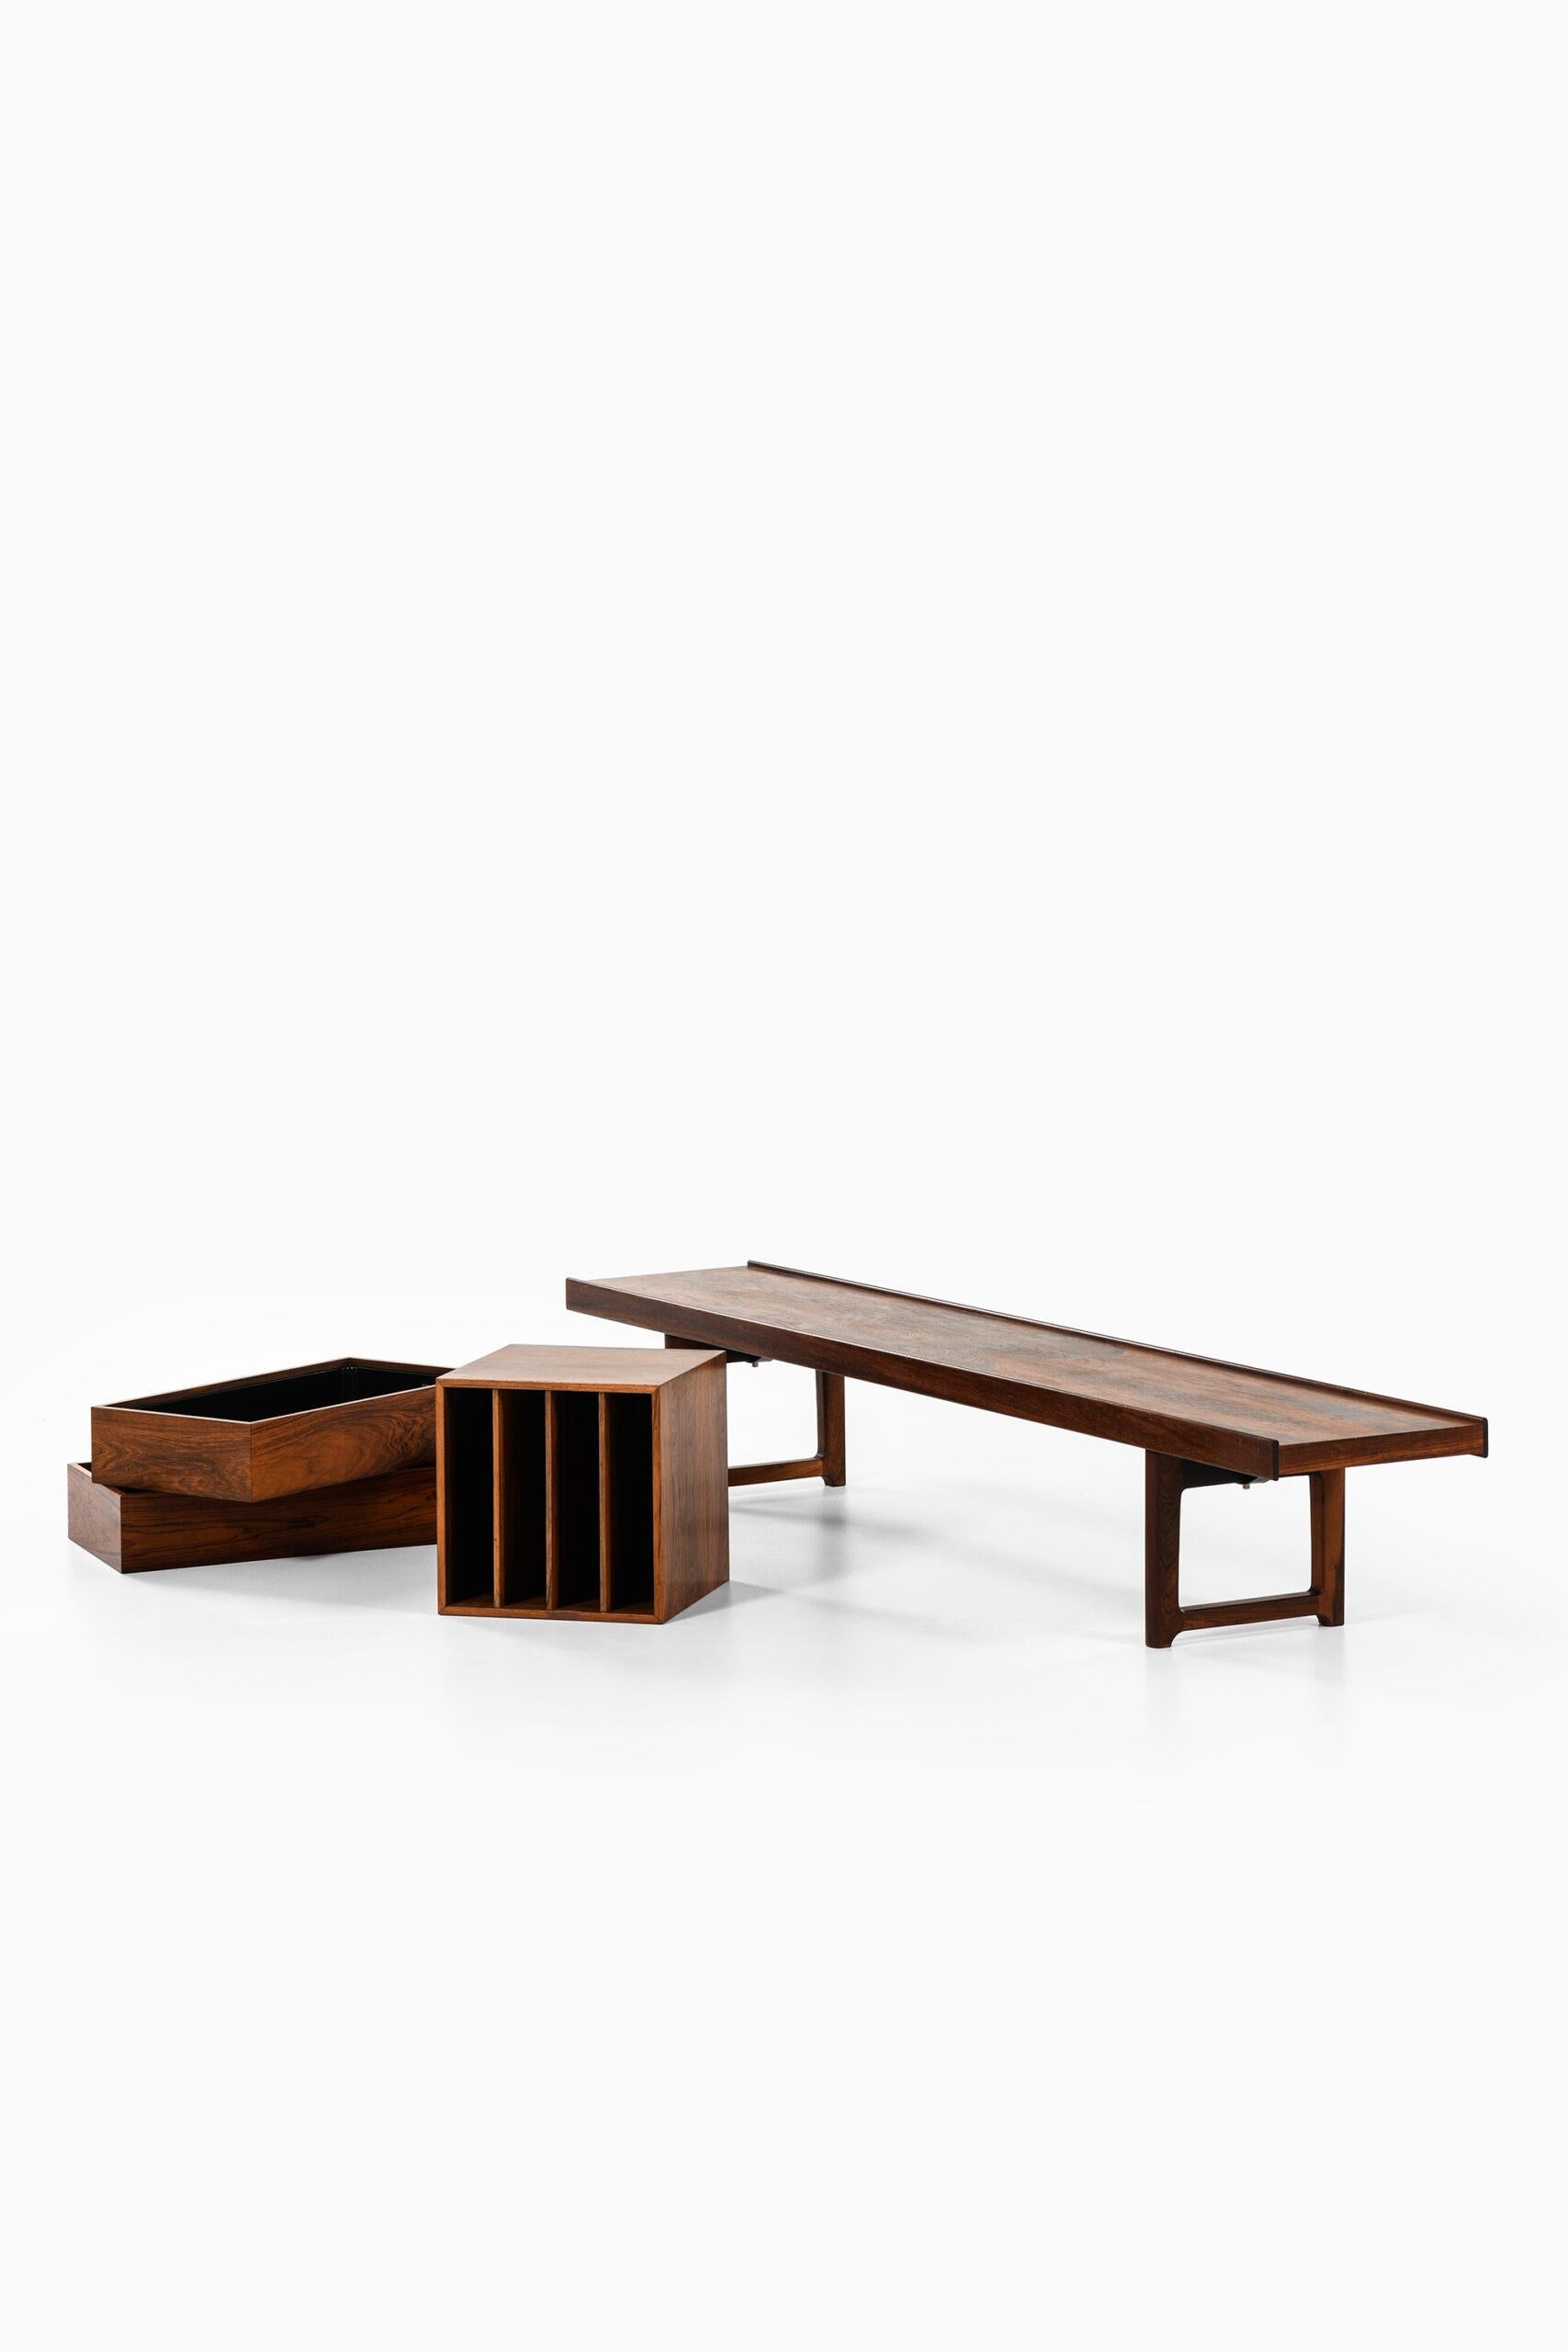 Torbjørn Afdal Bench / Side Table Model Krobo by Mellemstrands Møbelfabrik For Sale 1